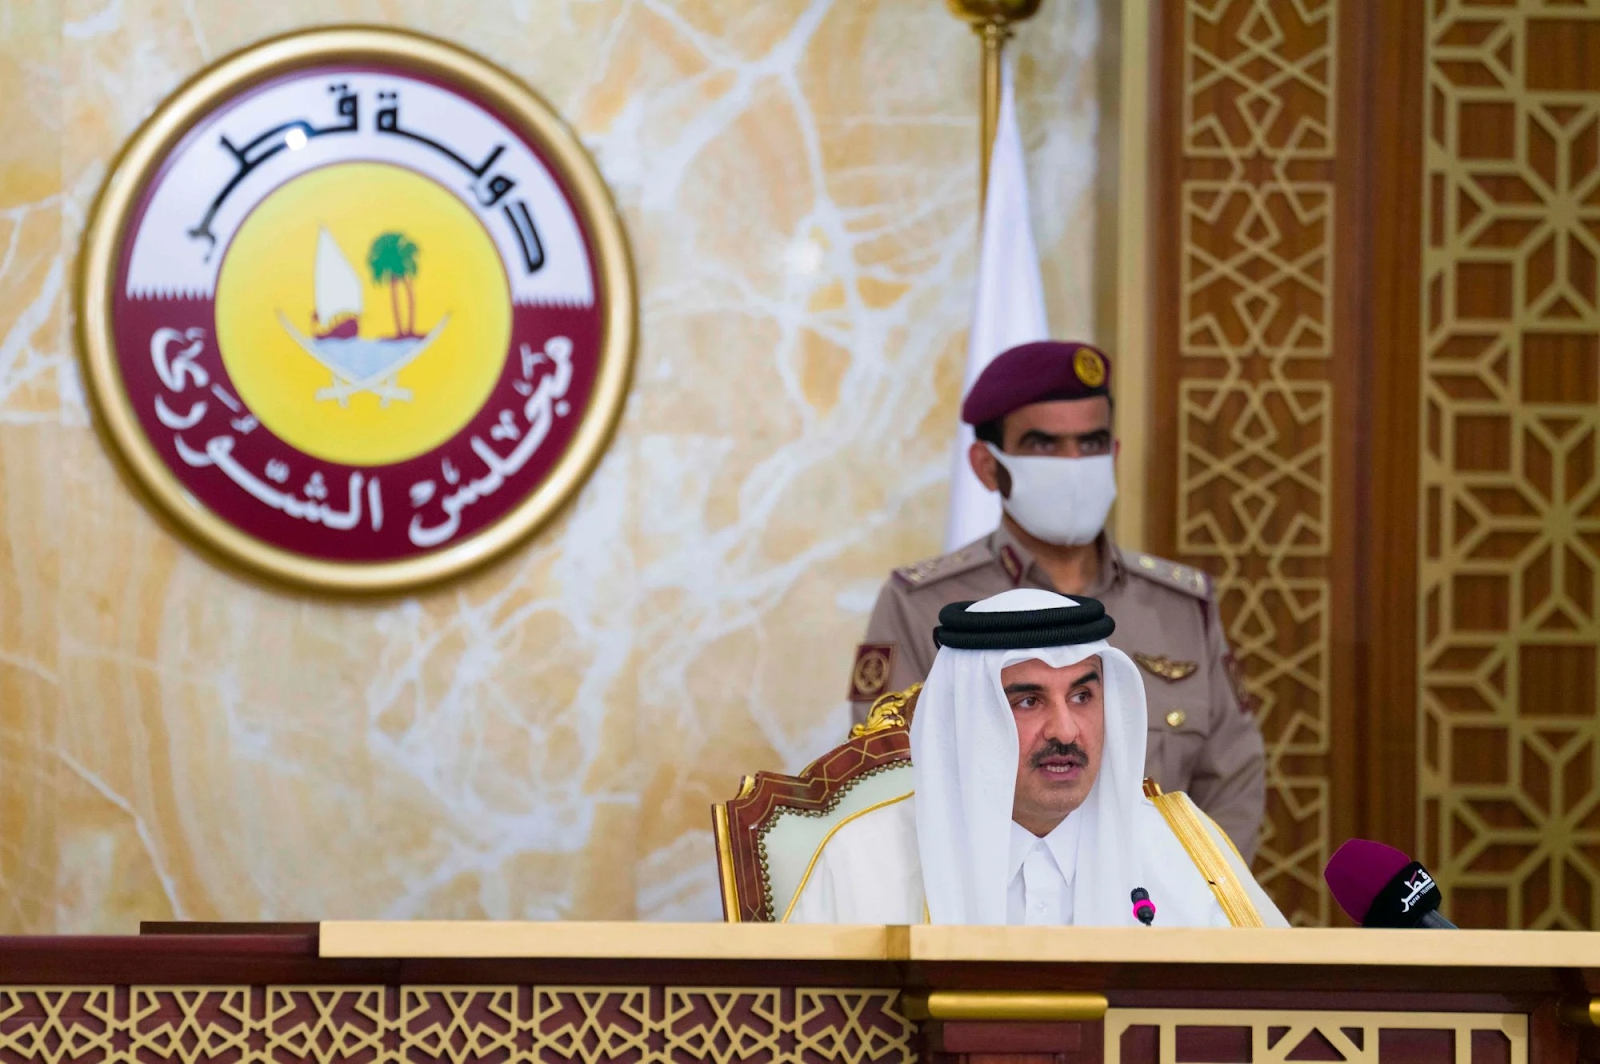 Cuộc sống hào nhoáng của gia tộc Qatar: Hoàng tộc giàu có hàng đầu thế giới có đến 8.000 thành viên, lái nhiều siêu xe đẳng cấp - Ảnh 1.